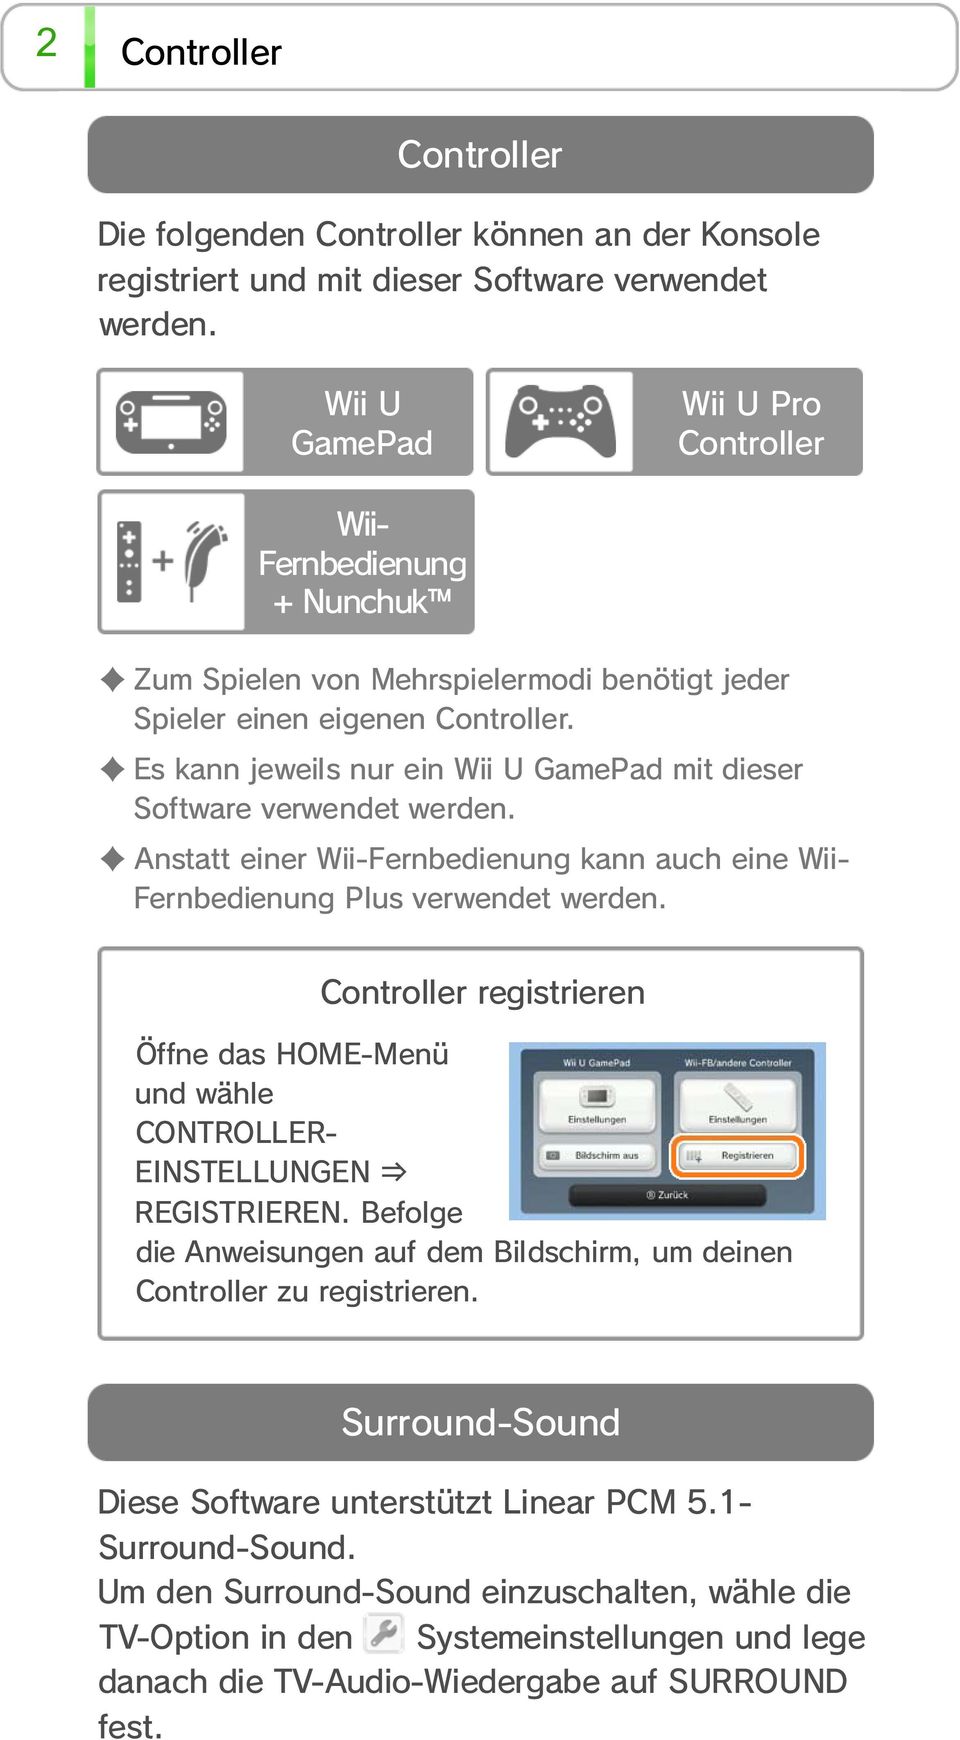 Es kann jeweils nur ein Wii U GamePad mit dieser Software verwendet werden. Anstatt einer Wii-Fernbedienung kann auch eine Wii- Fernbedienung Plus verwendet werden.